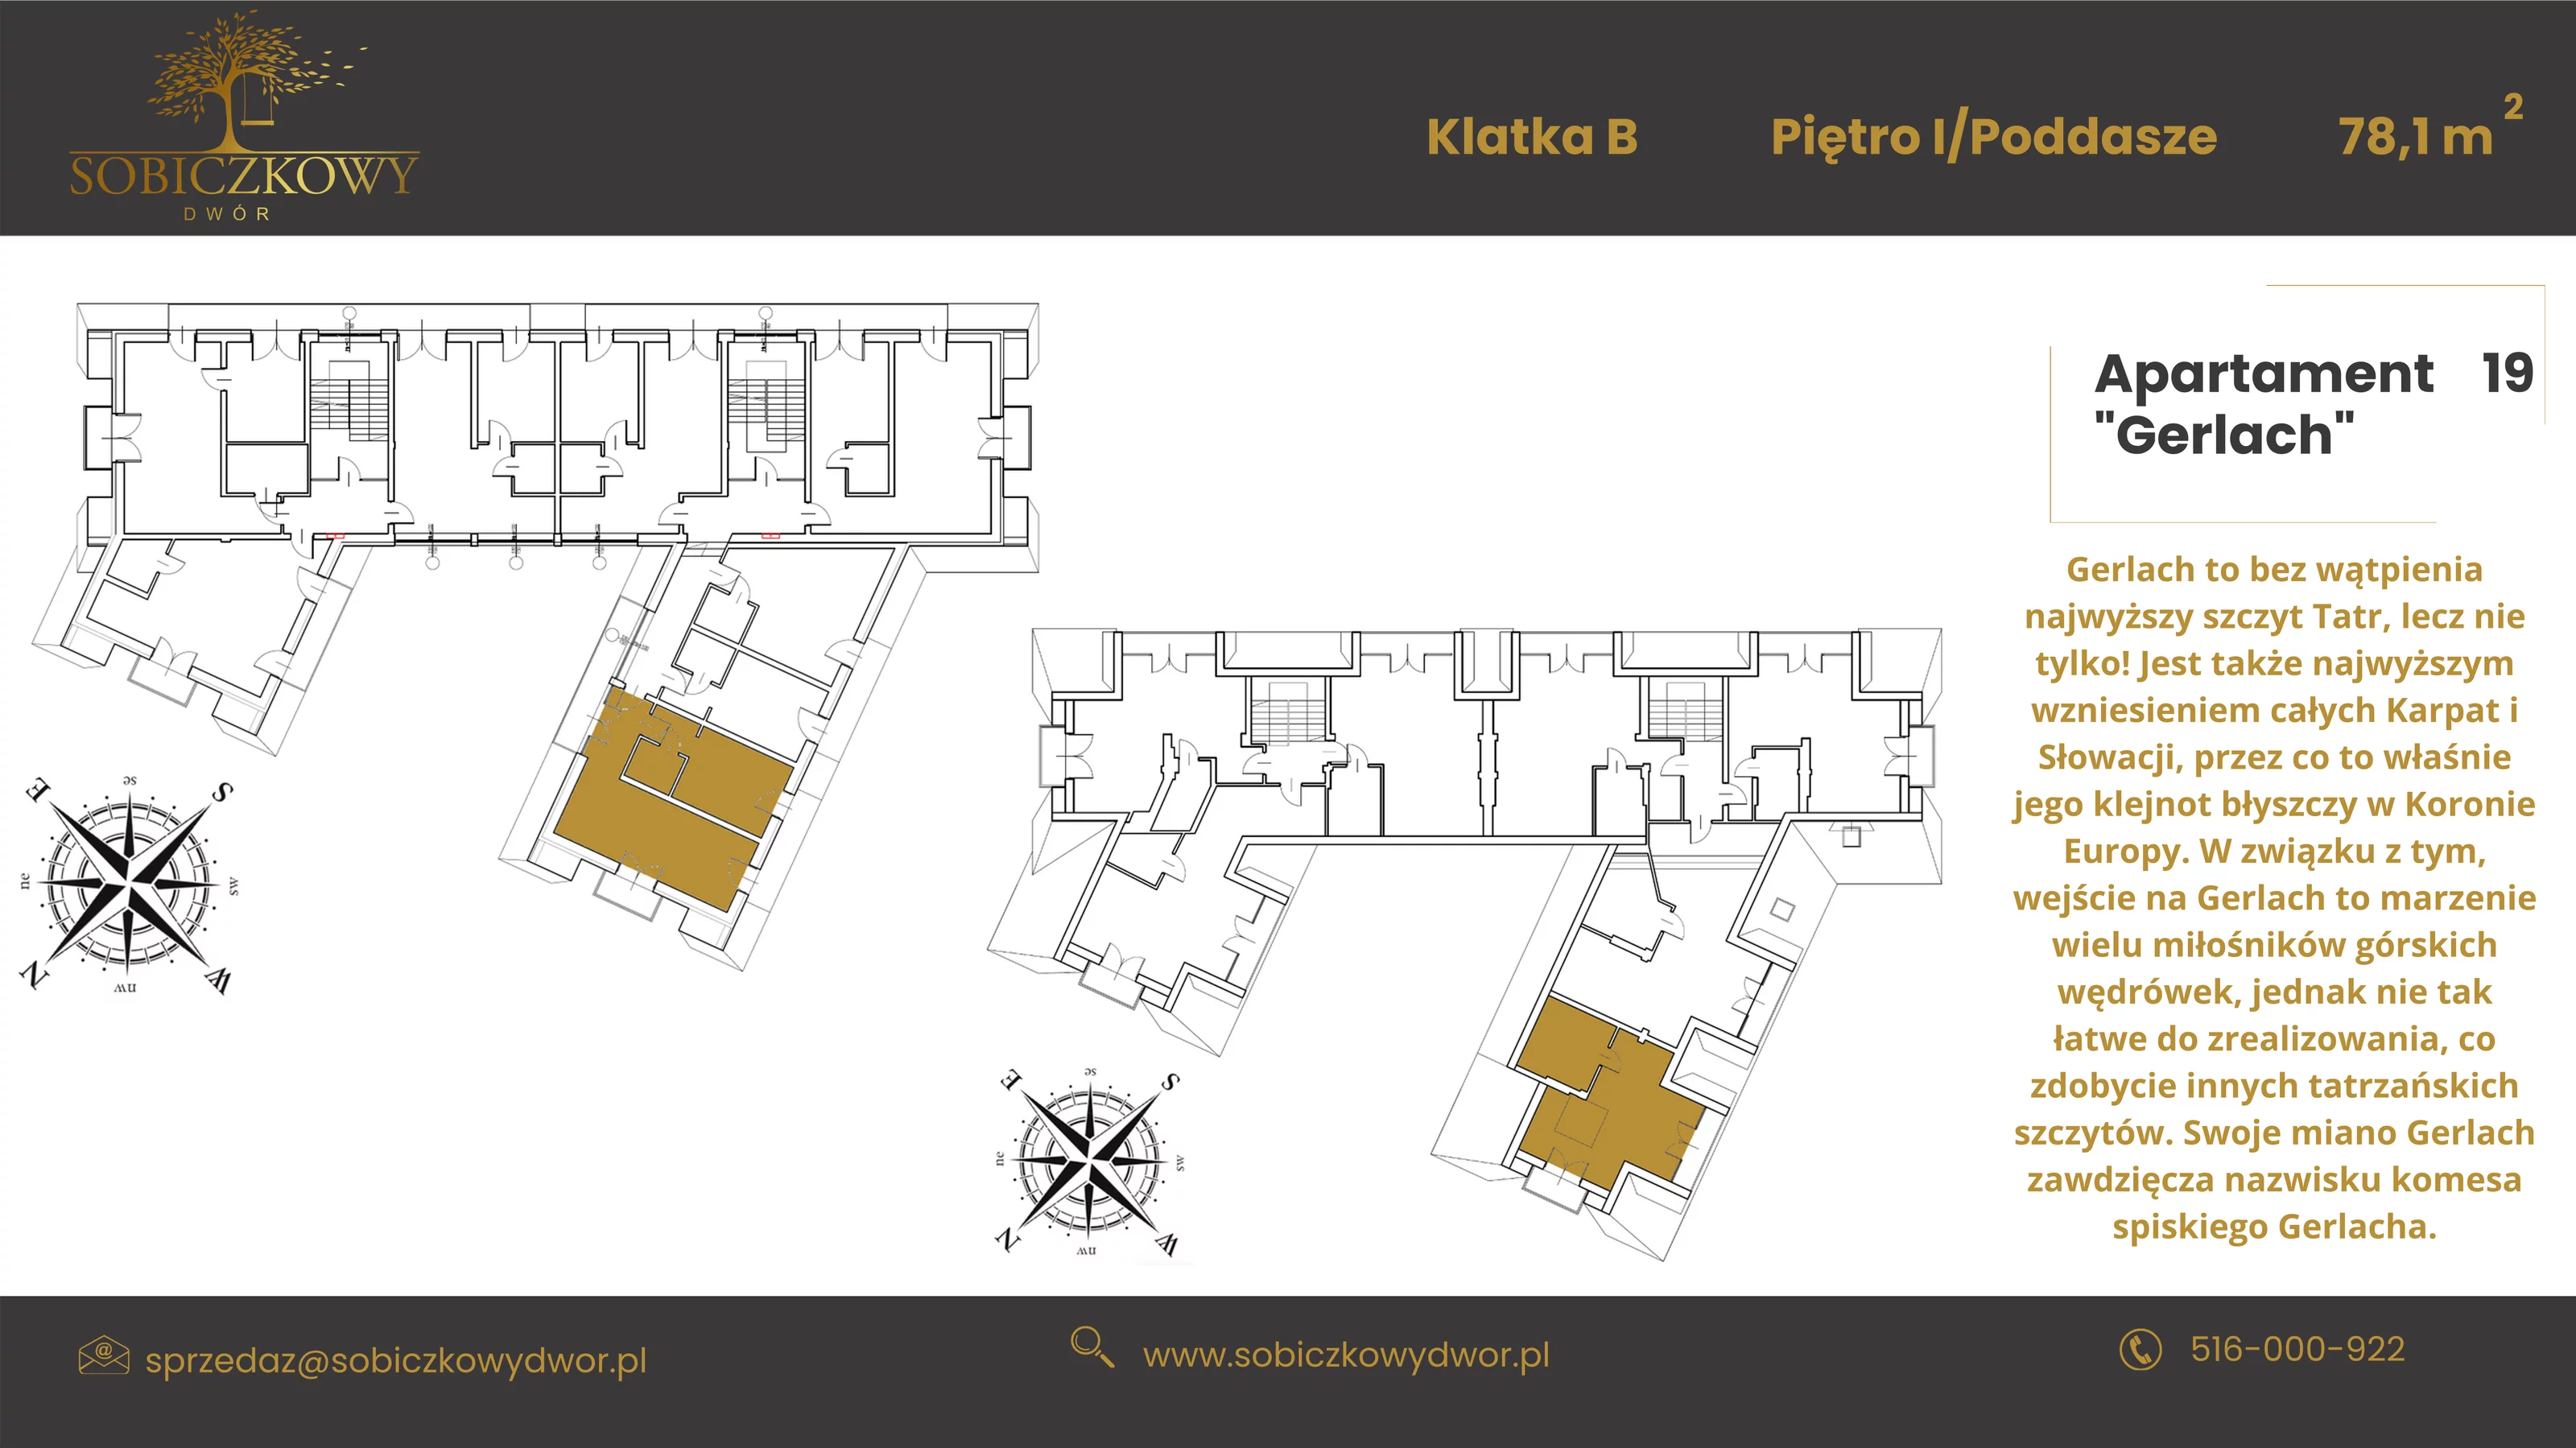 Apartament 84,70 m², piętro 1, oferta nr 19 "Gerlach", Sobiczkowy Dwór, Kościelisko, ul. Sobiczkowa Bór 1